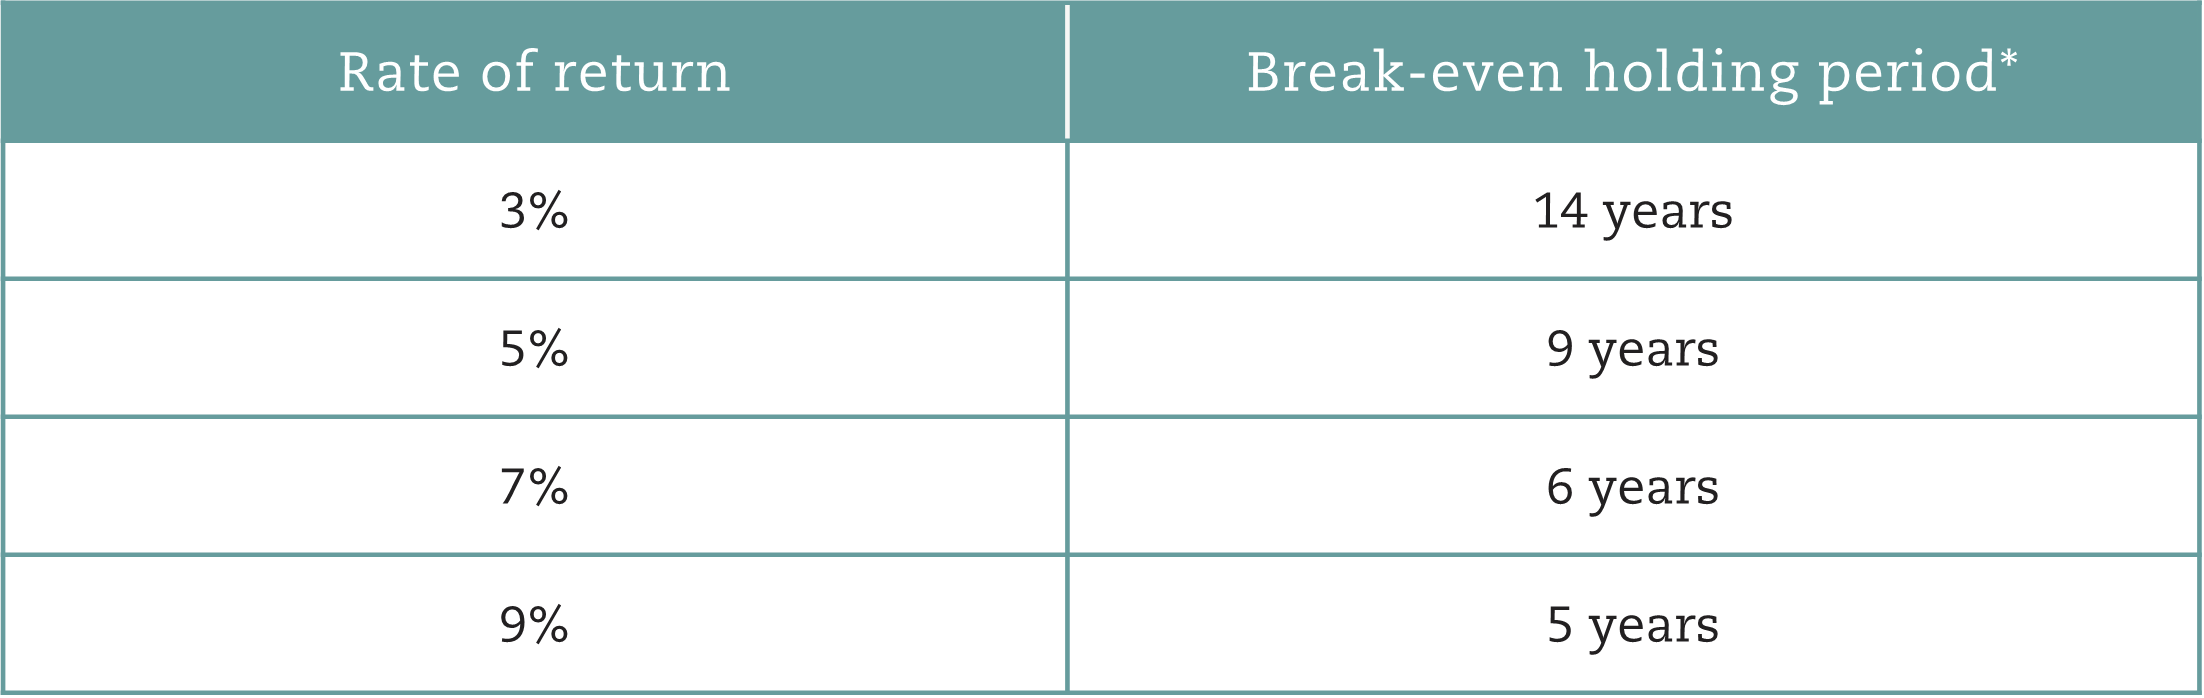 Rate of return vs break-even period-1